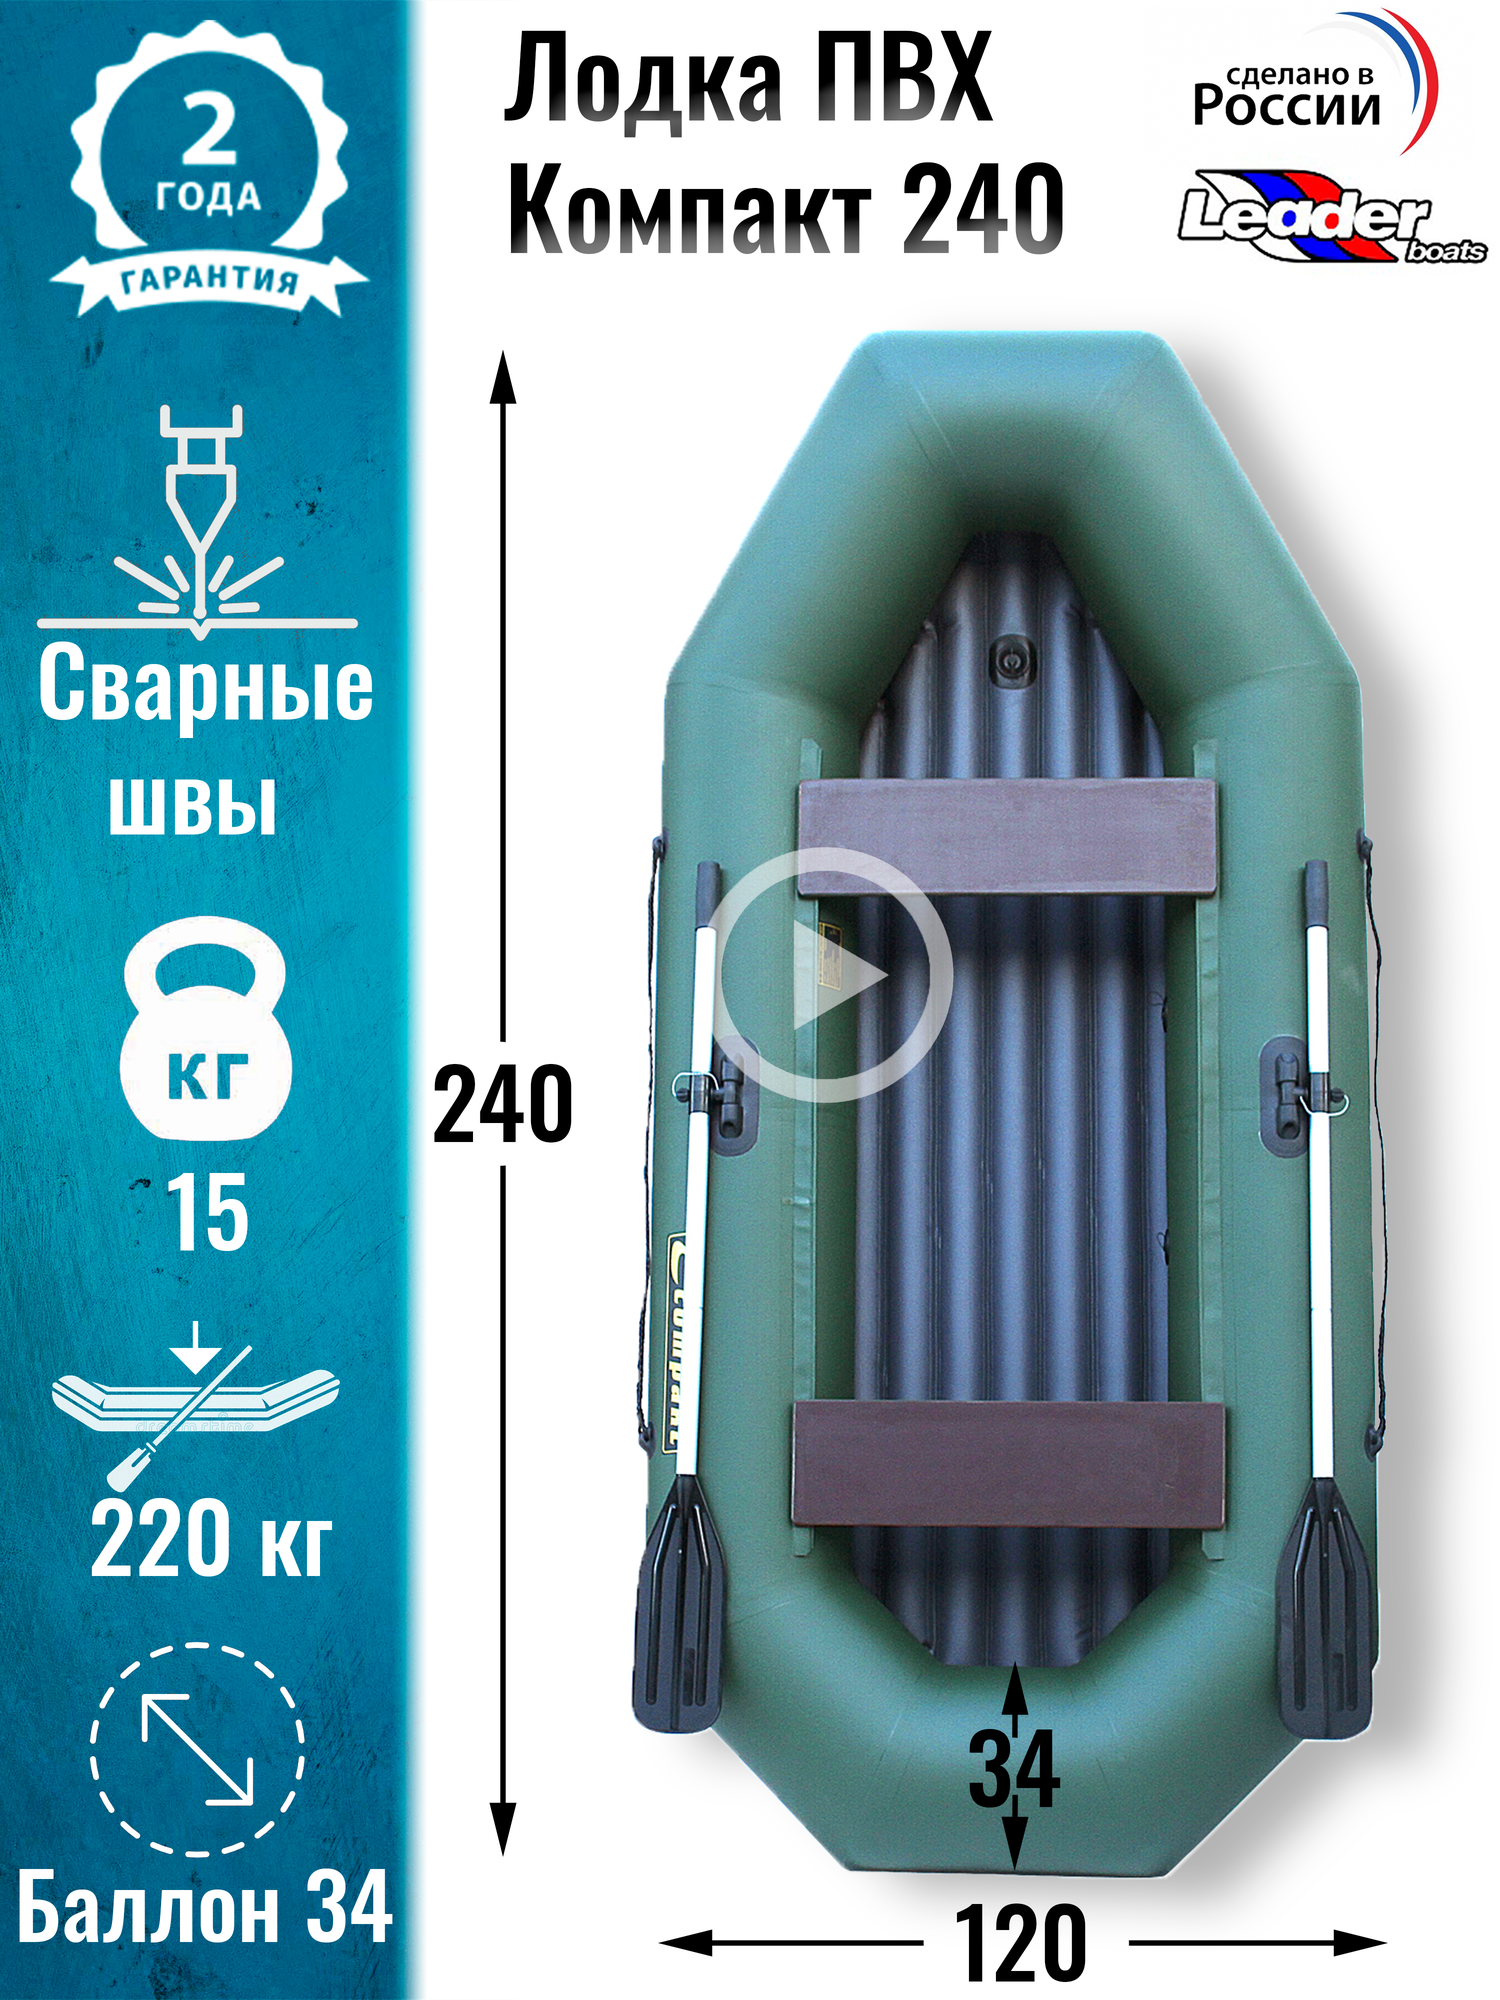 Leader boats/Надувная лодка ПВХ Компакт 240 надувное дно (зеленая)